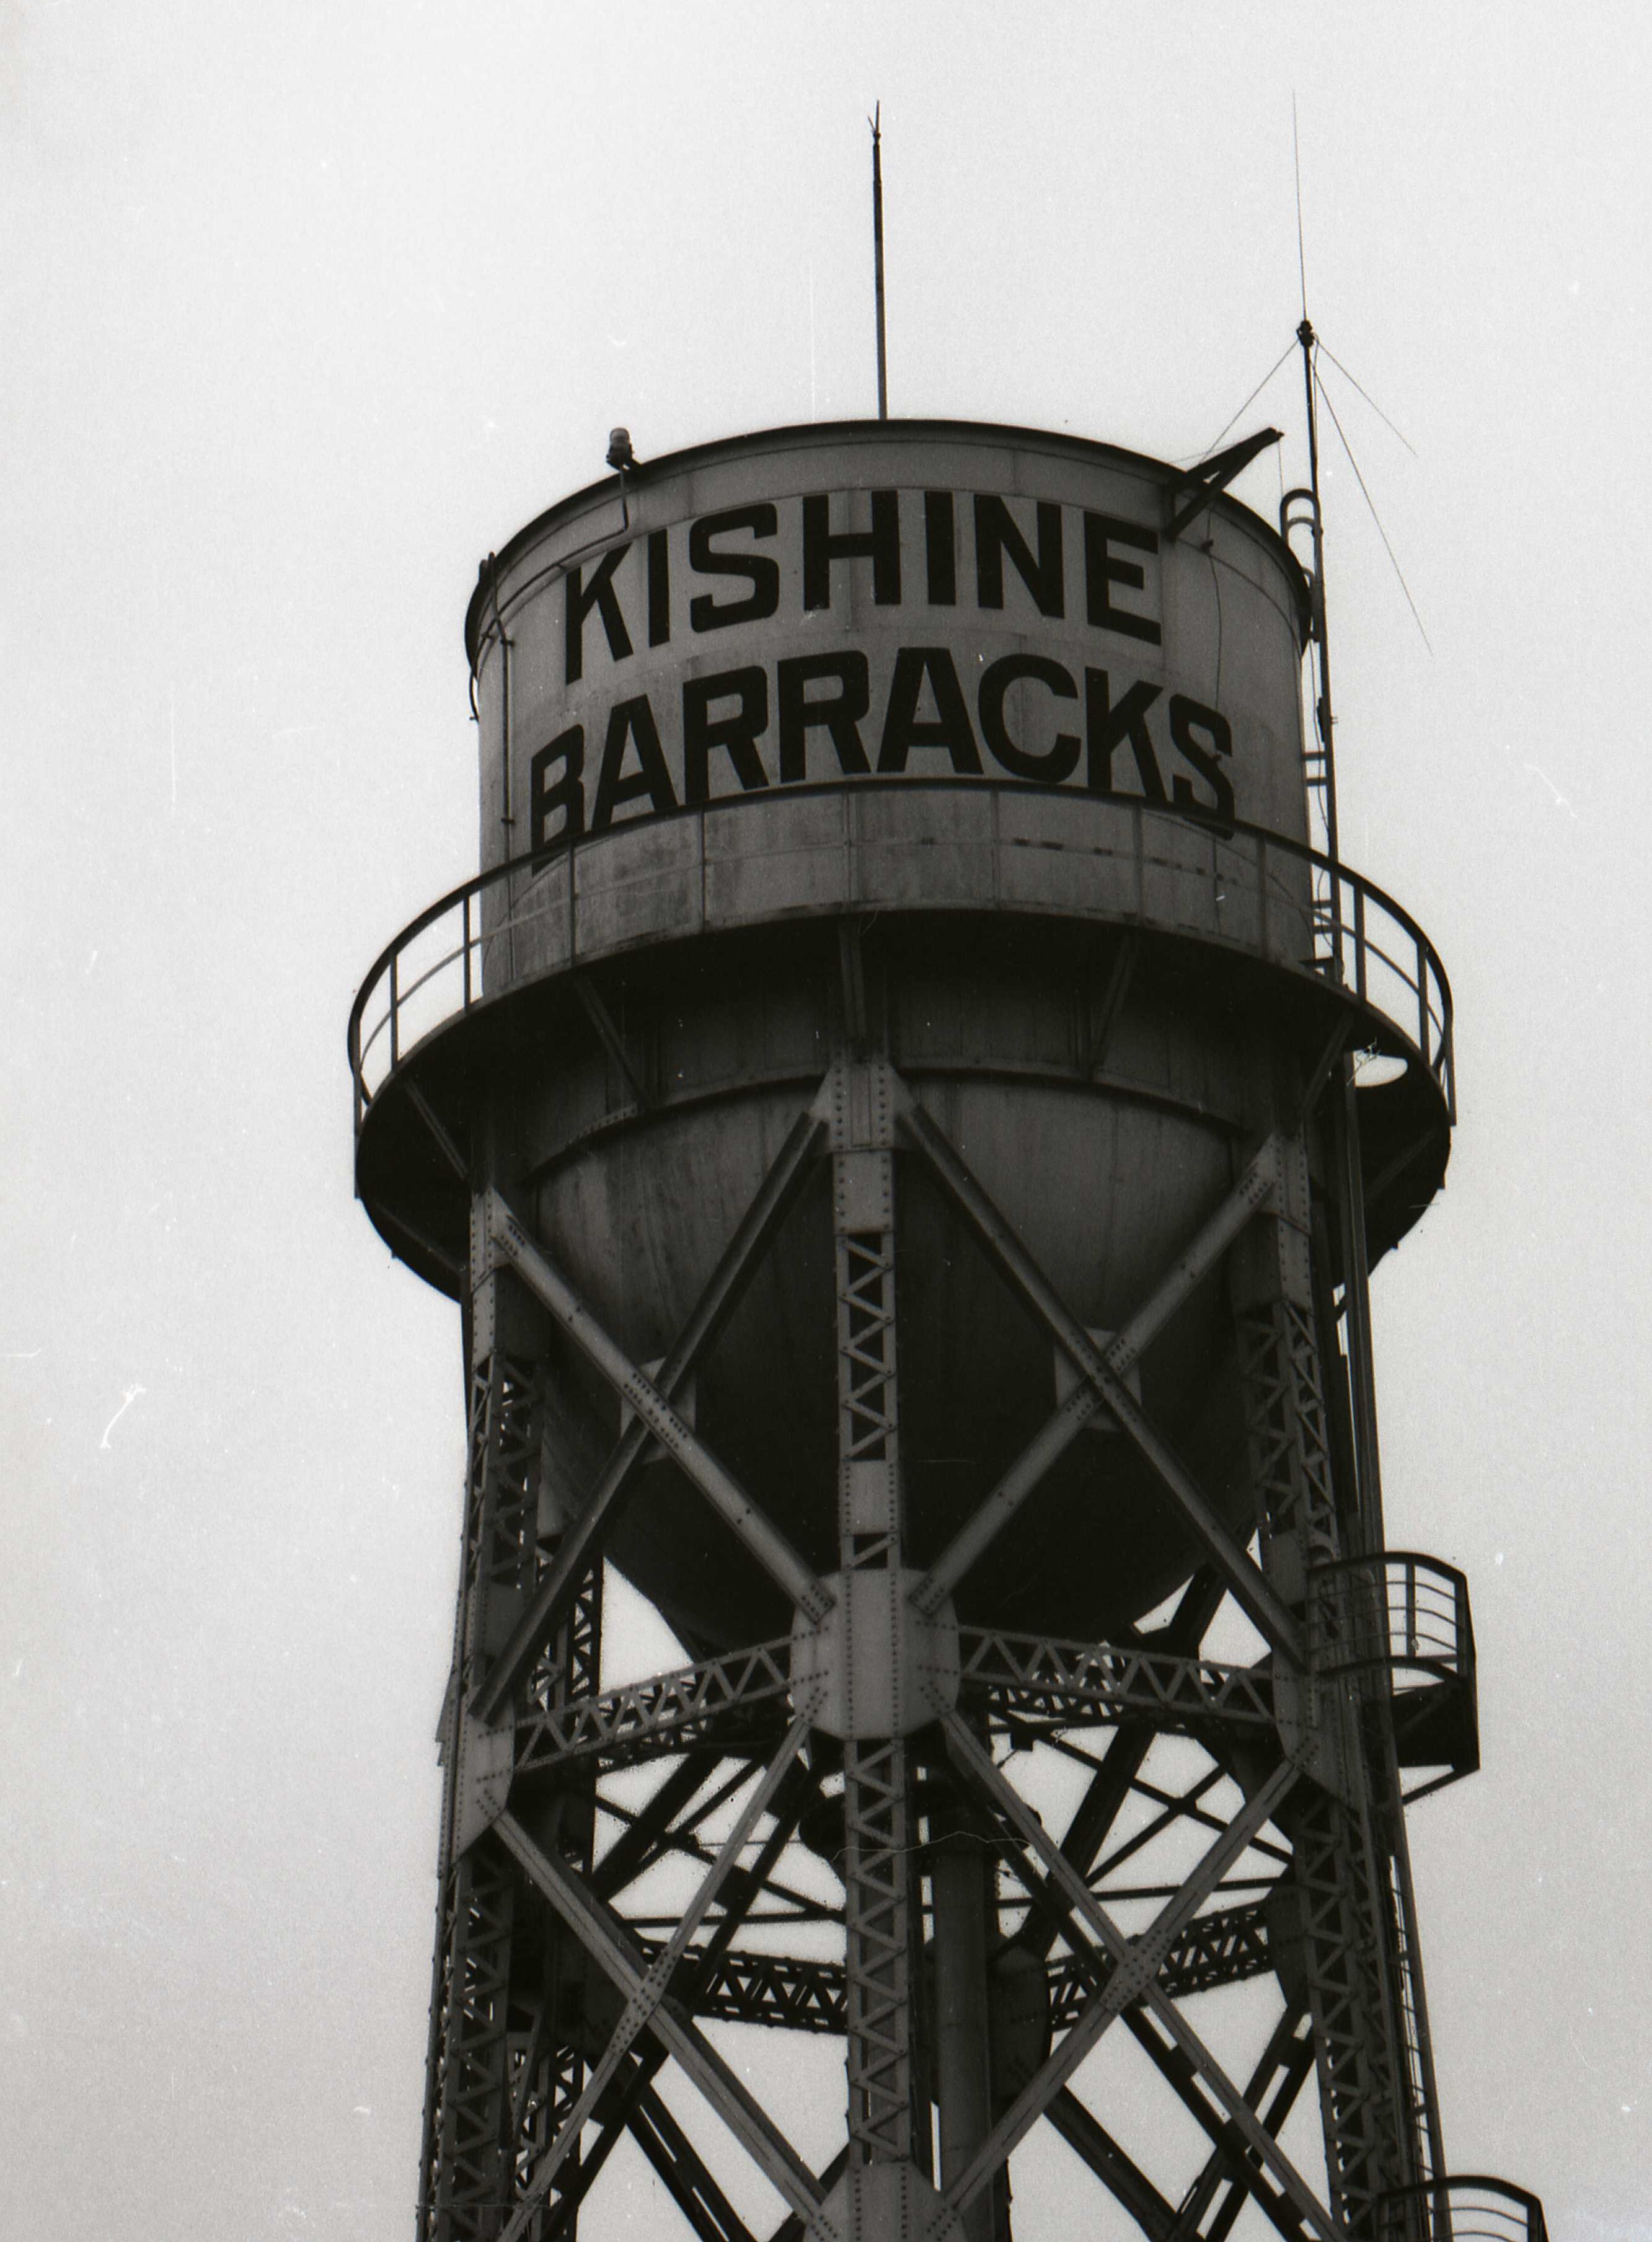 Kishine tower